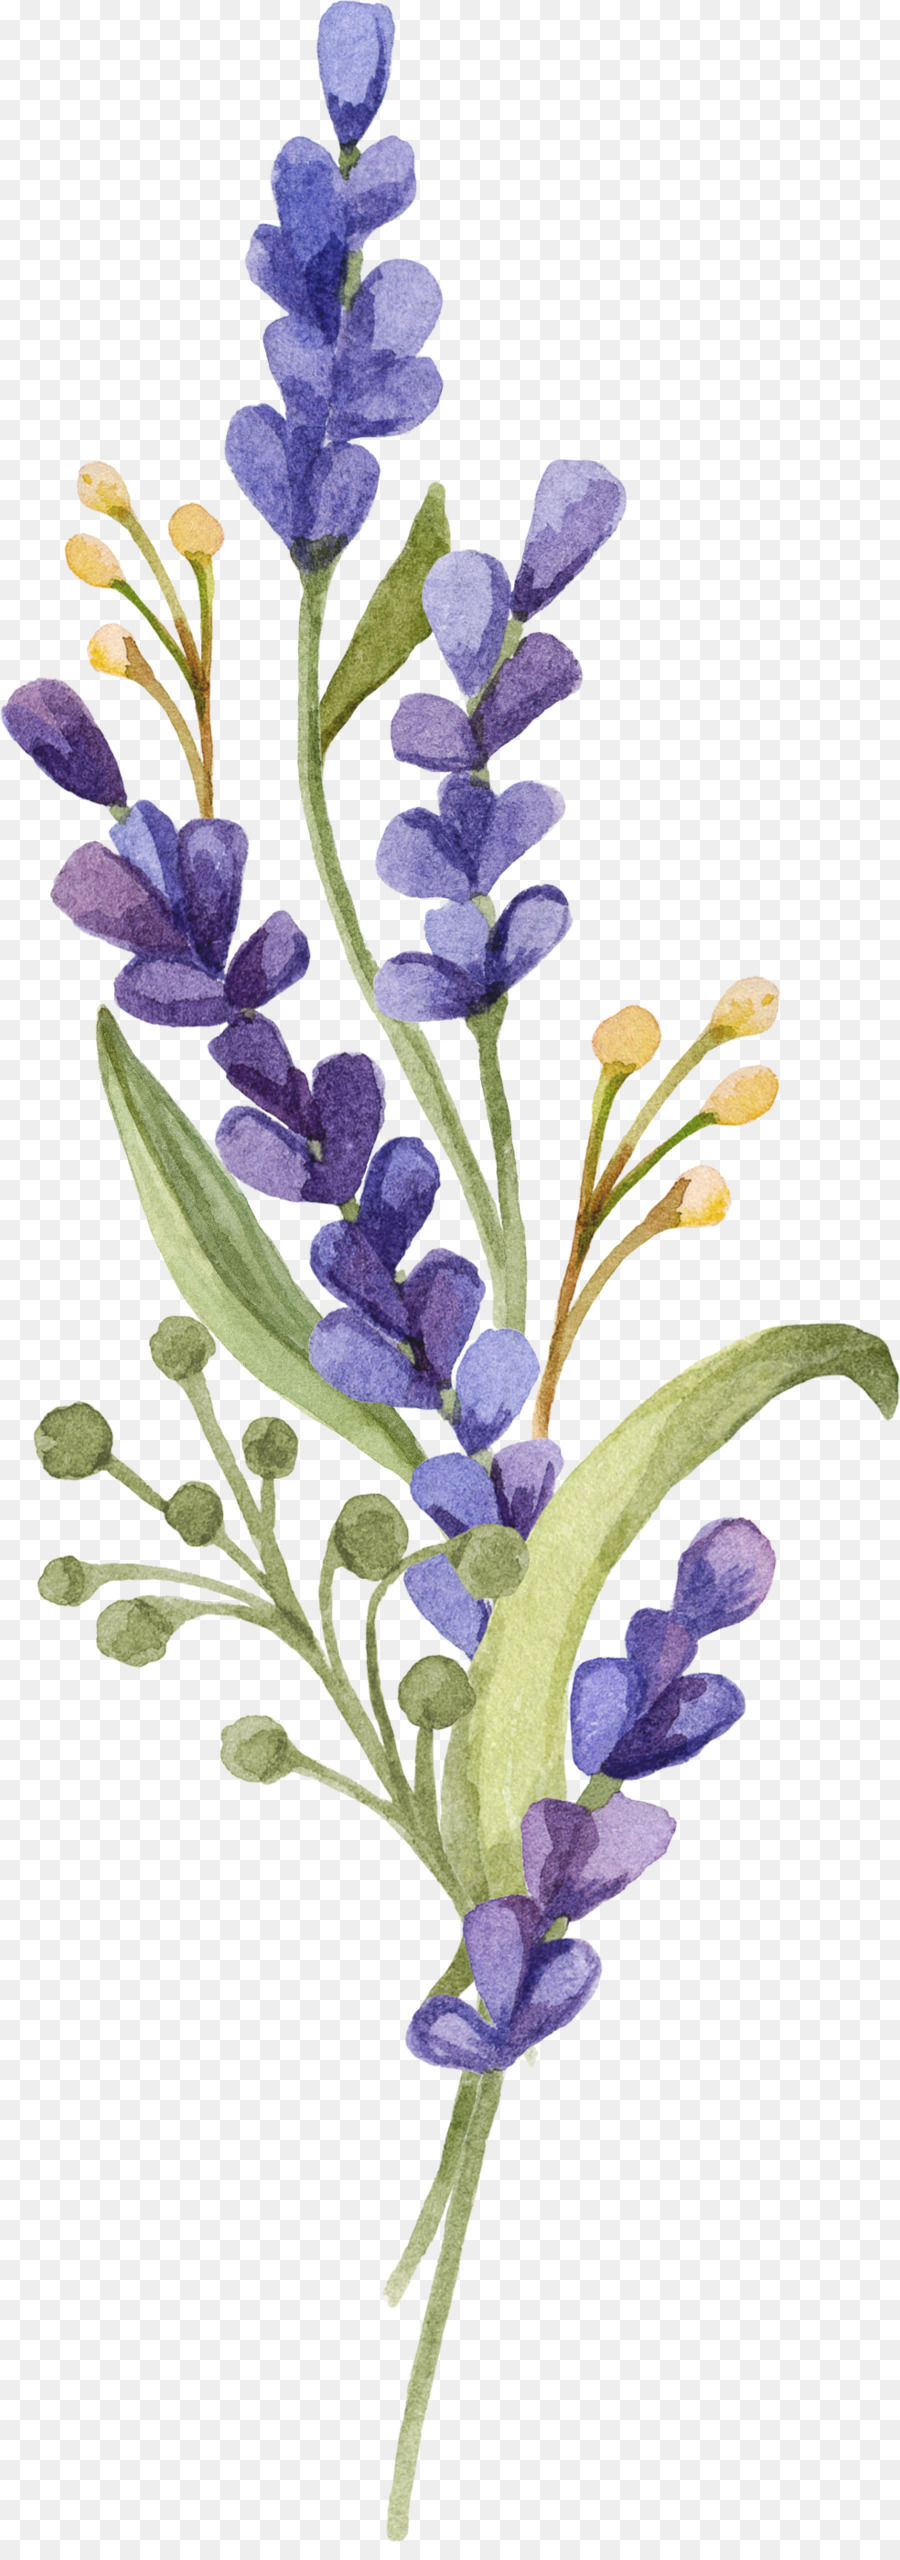 Tiếng anh, tiếng hoa oải hương Provence Lavandula dentata pháp hoa oải hương Hoa - Hoa oải hương